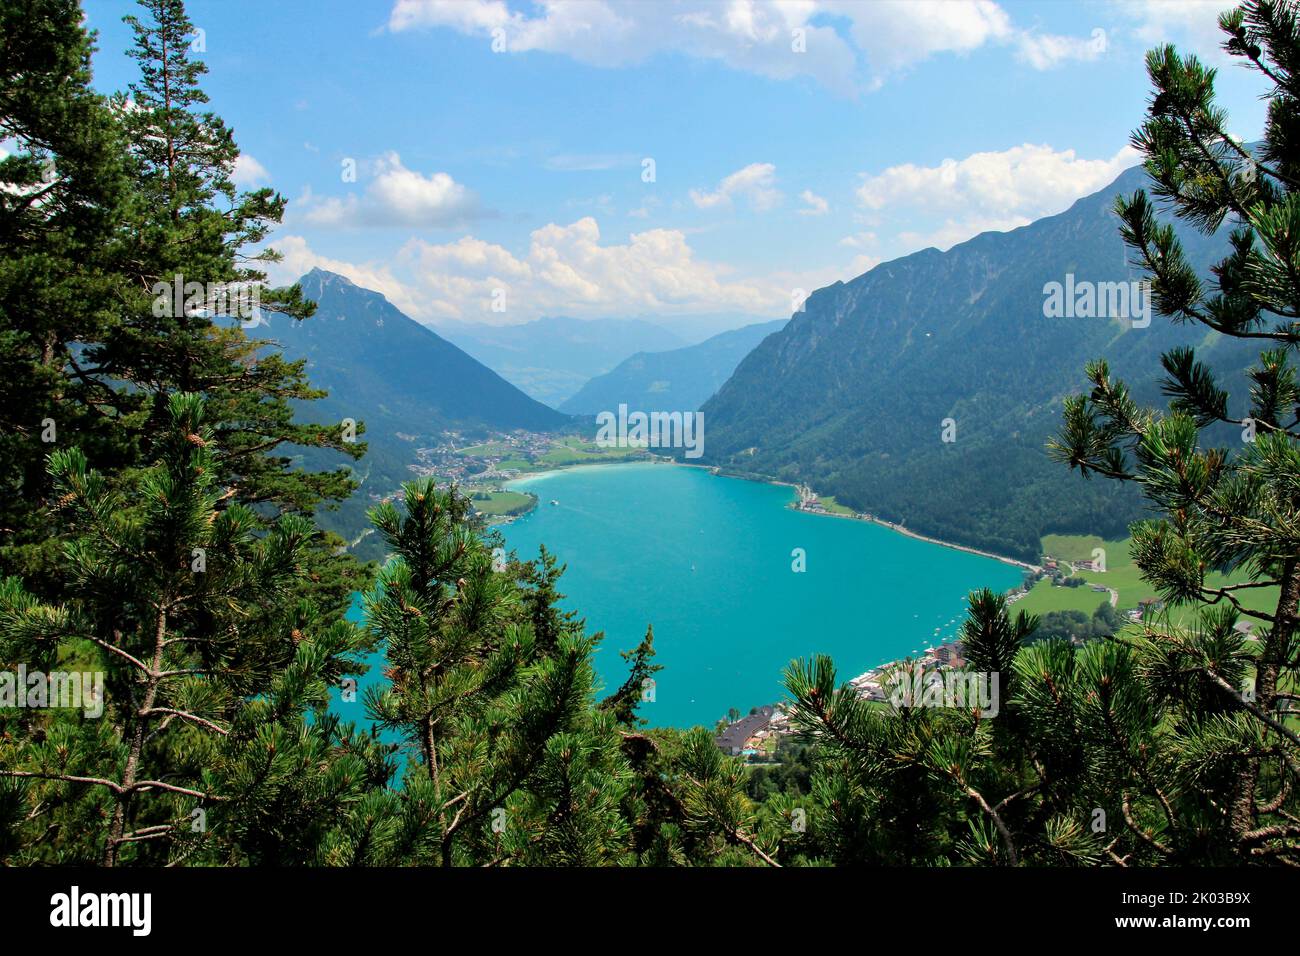 Vue sur Achensee, Maurach en arrière-plan, Pertisau en premier plan, tout en randonnée à Seebergspitze, panorama alpin, Tyrol, Autriche Banque D'Images